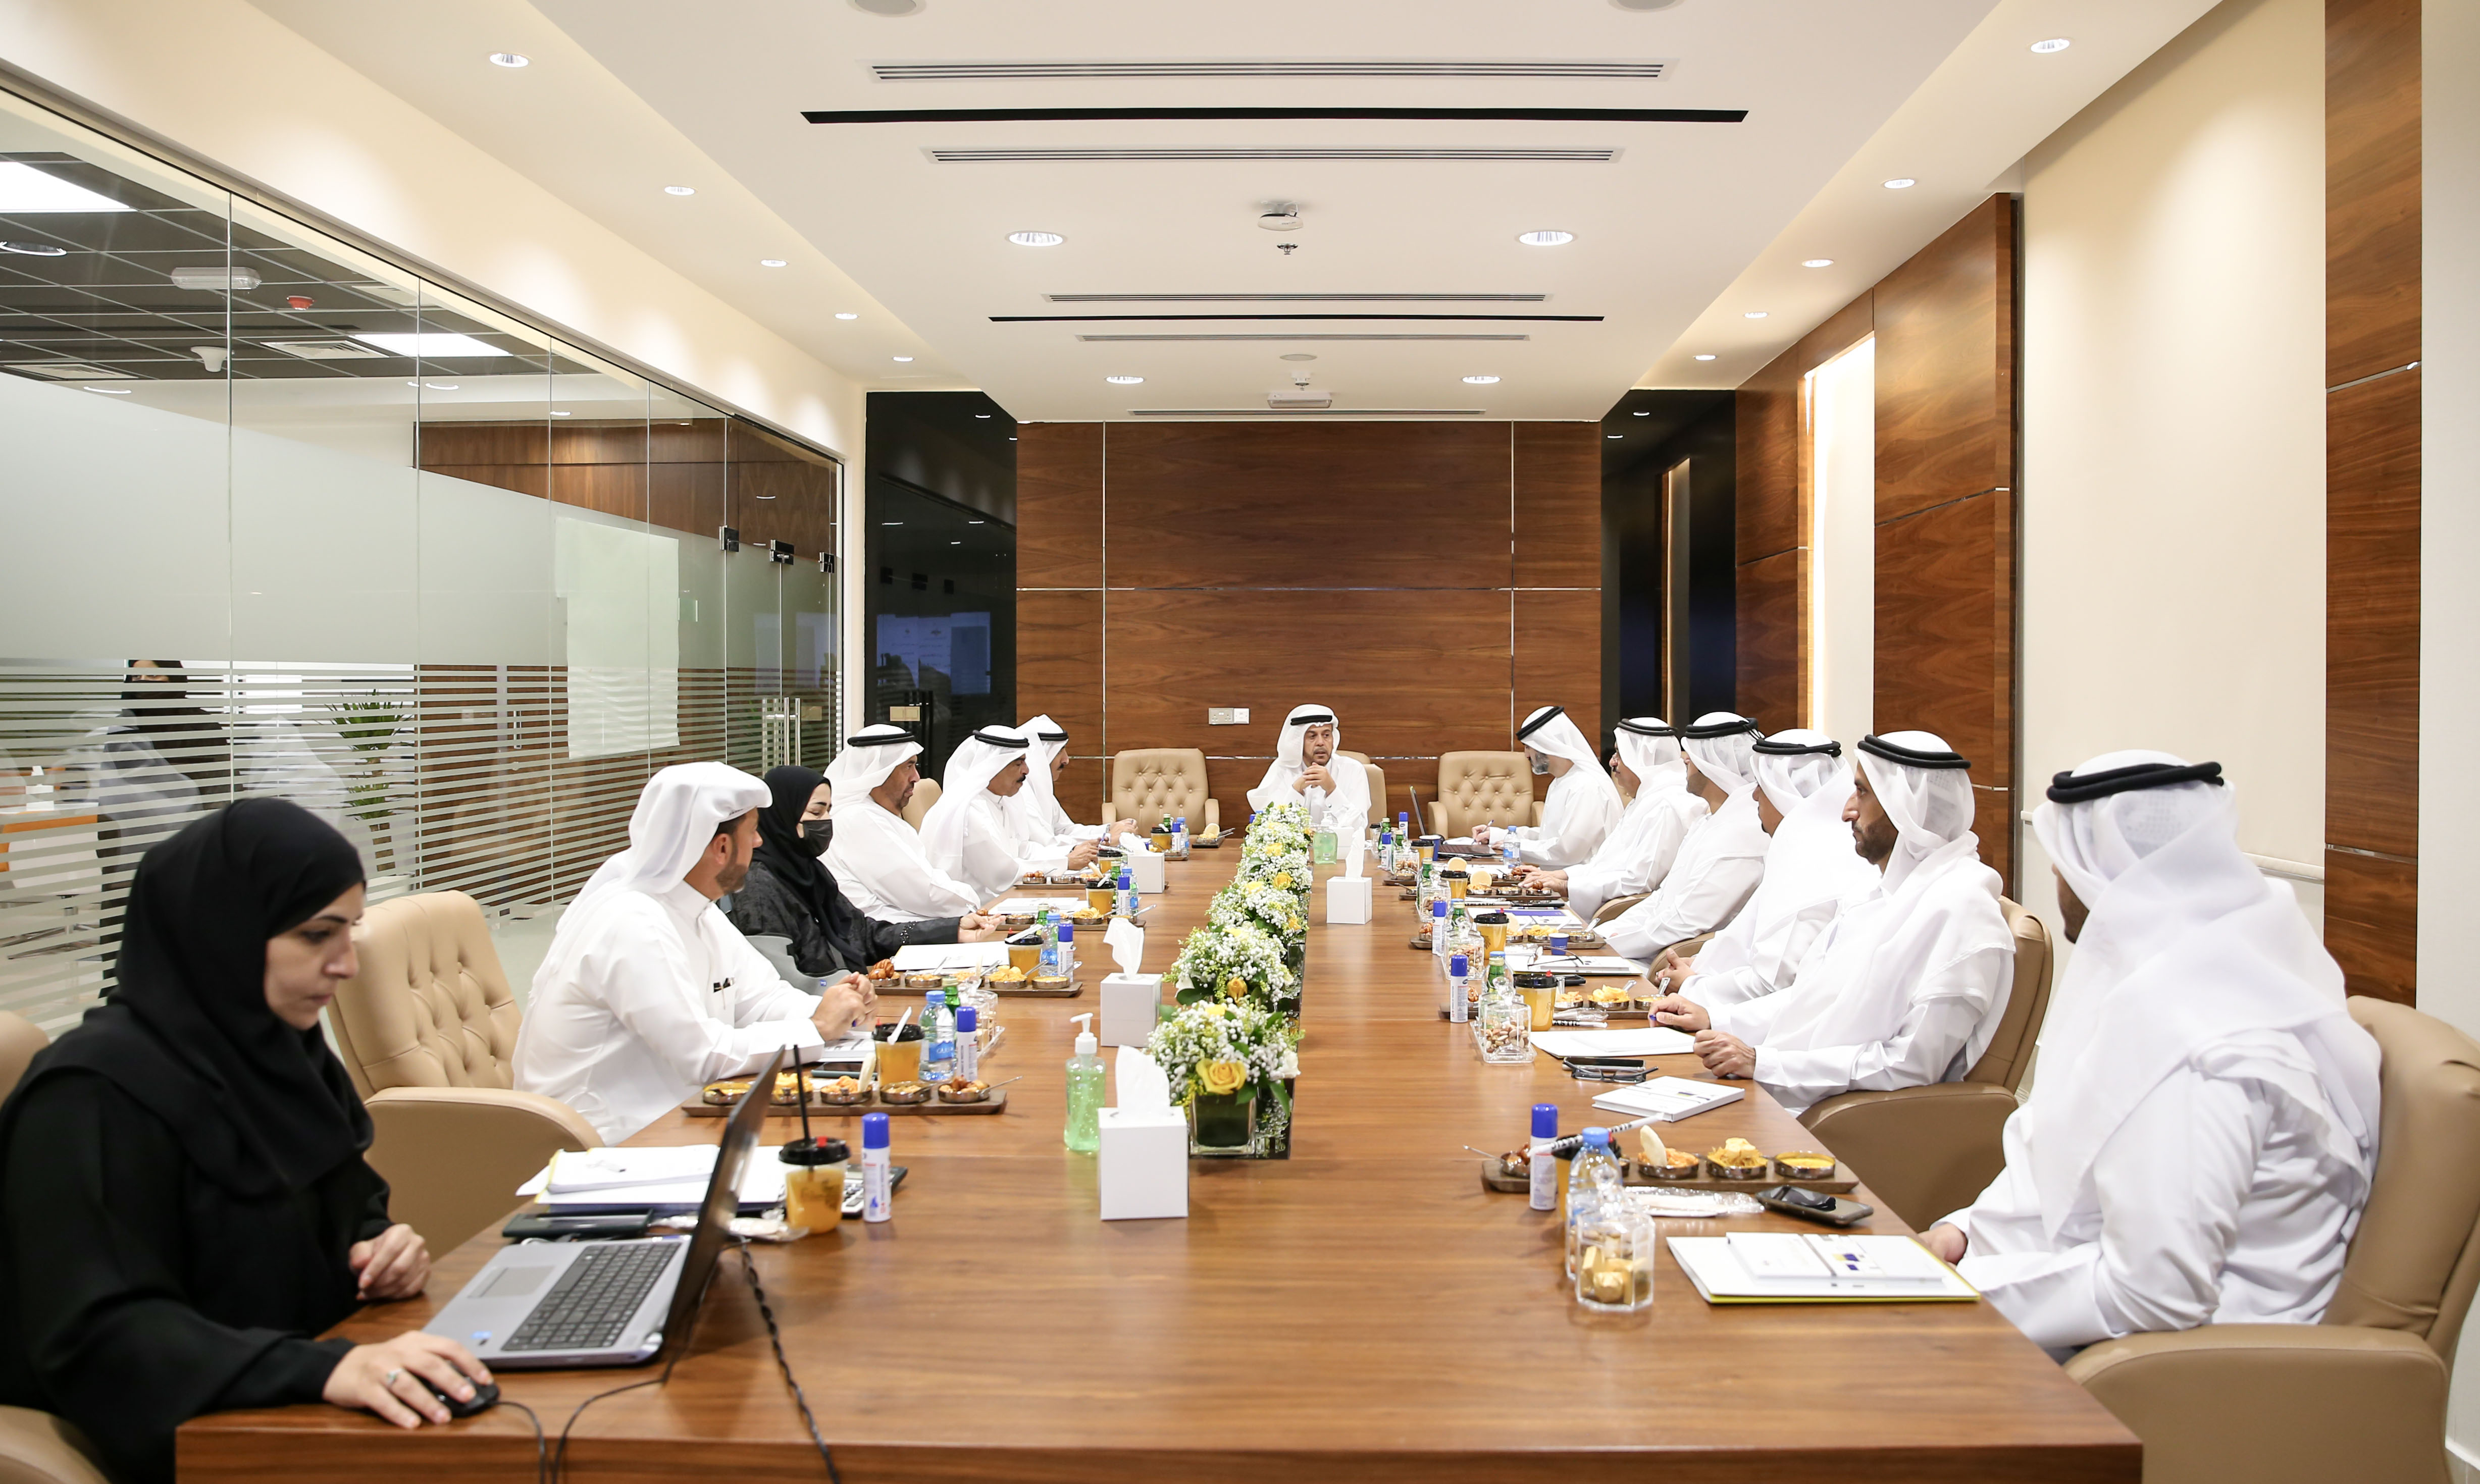 مجلس إدارة غرفة عجمان يعقد إجتماعه الثاني للعام 2021  ويطلع على إستراتيجية الابتكار واستشراف المستقبل في الغرفة